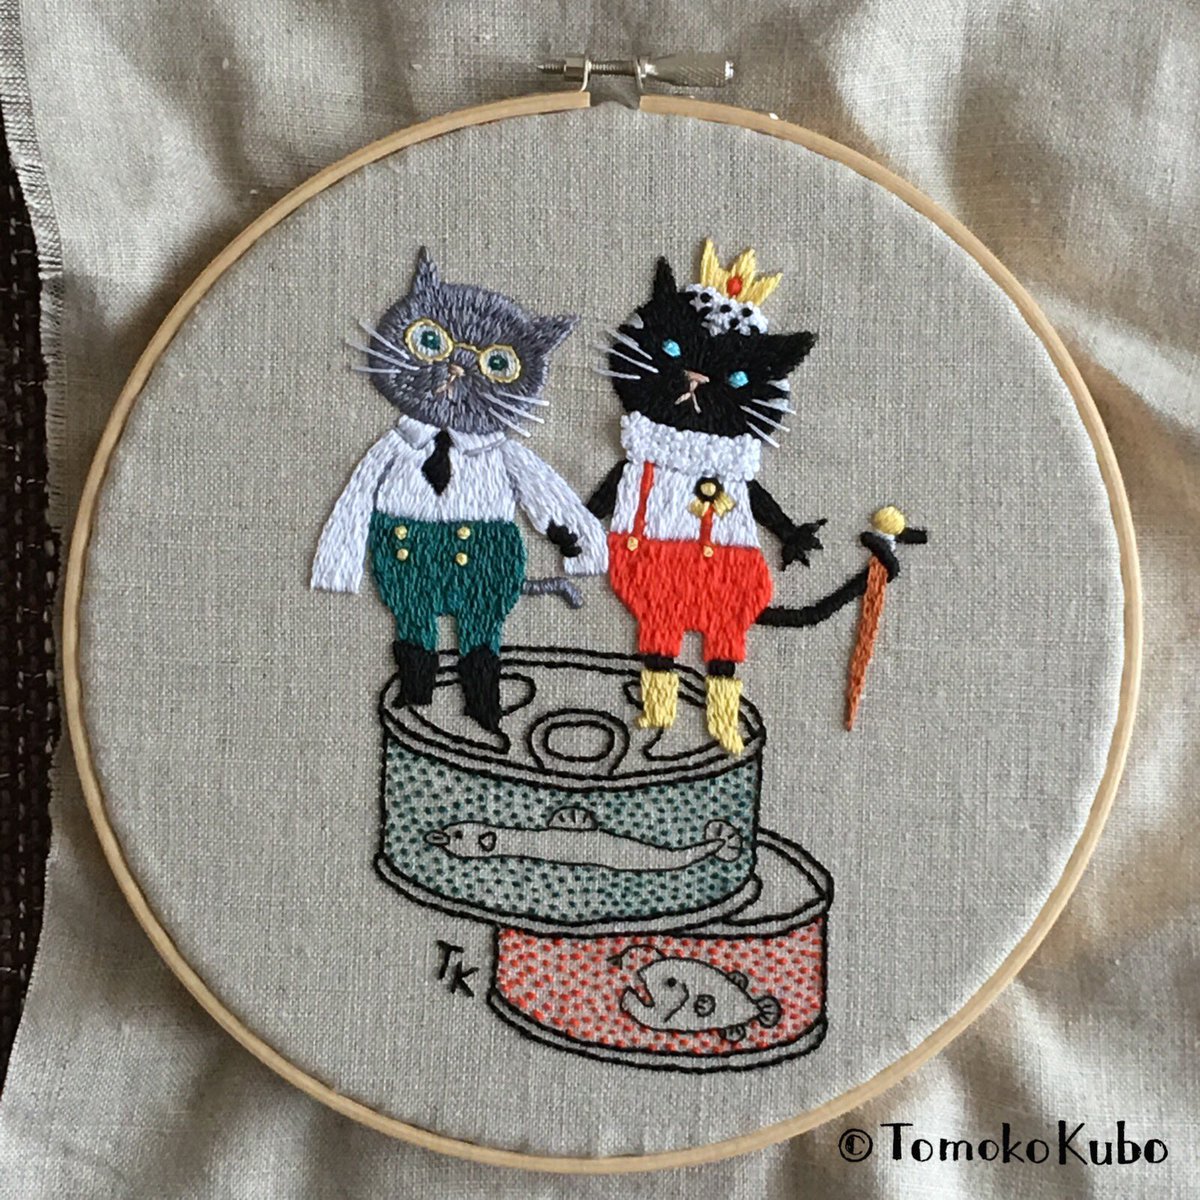 クボトモコ イラストレーター 刺繍作家 完成 今迄は刺繍用に図案を考えていたけど イラストから刺繍用にアレンジするのも楽しい クボトモコ Embroidery 刺繍 刺绣 자수 Cat Handmade ハンドメイド ネコ Tomokokubo T Co Rxcomvuxdj